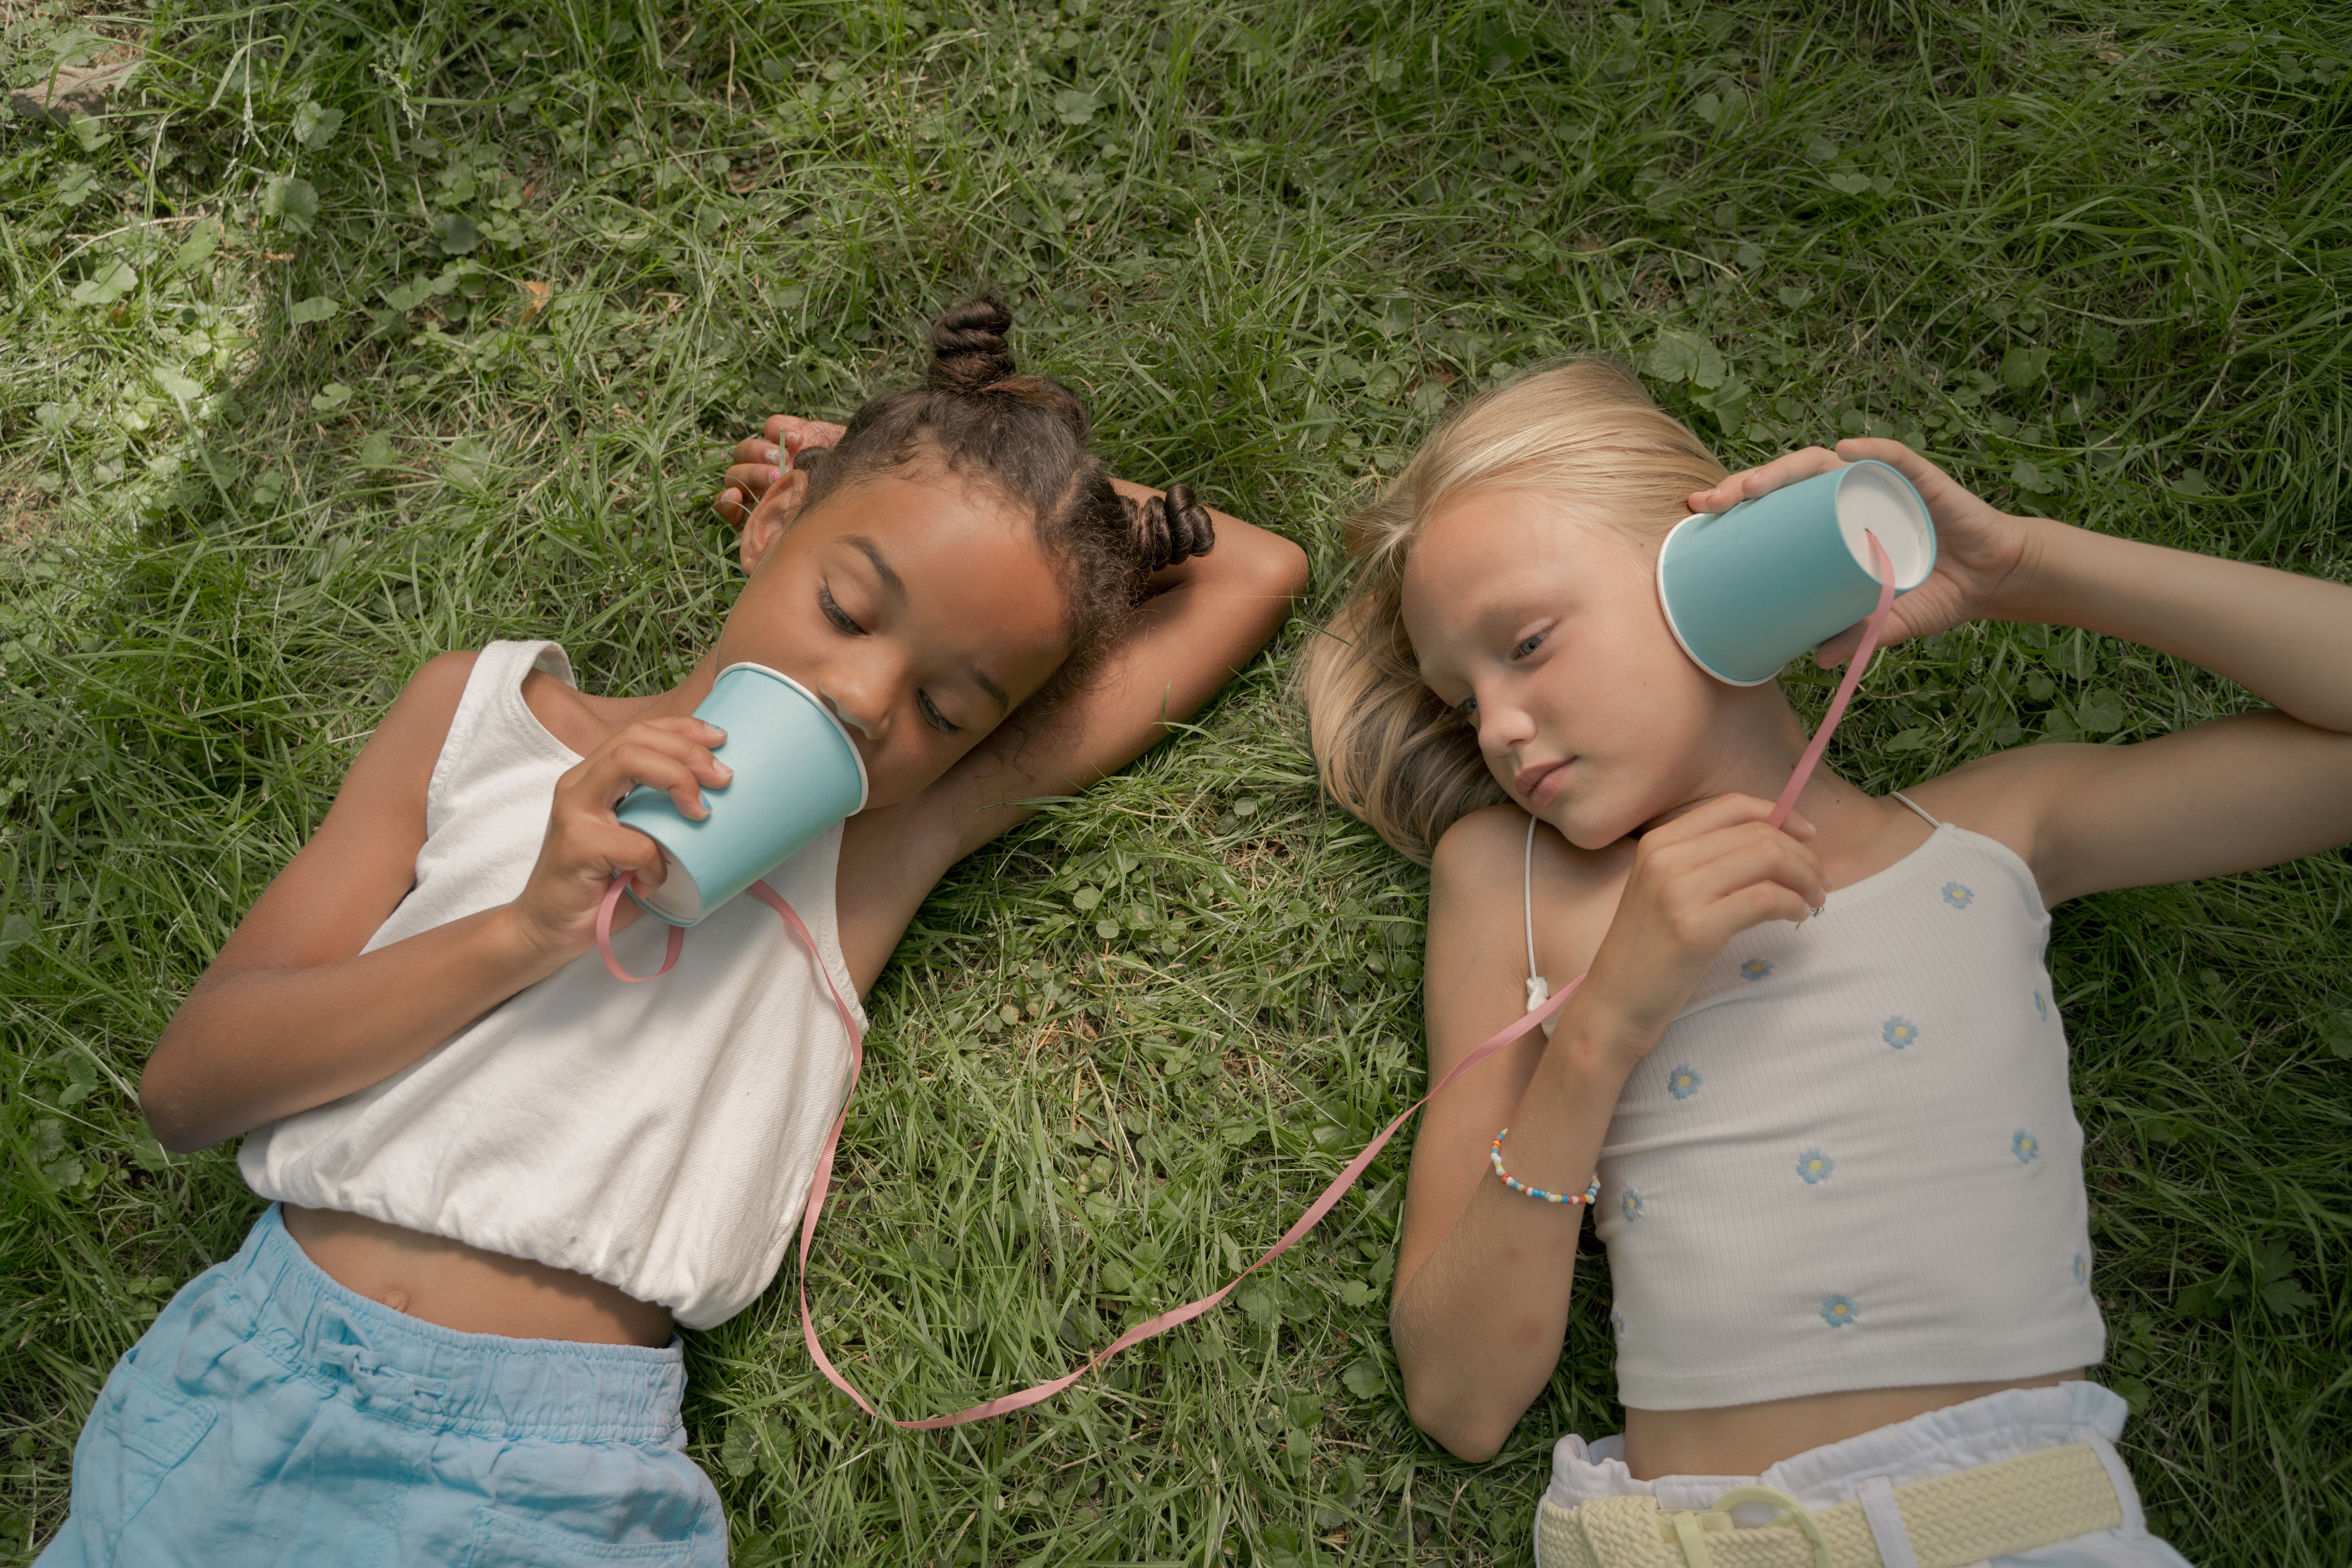 Zwei junge Mädchen | Quelle: Pexels